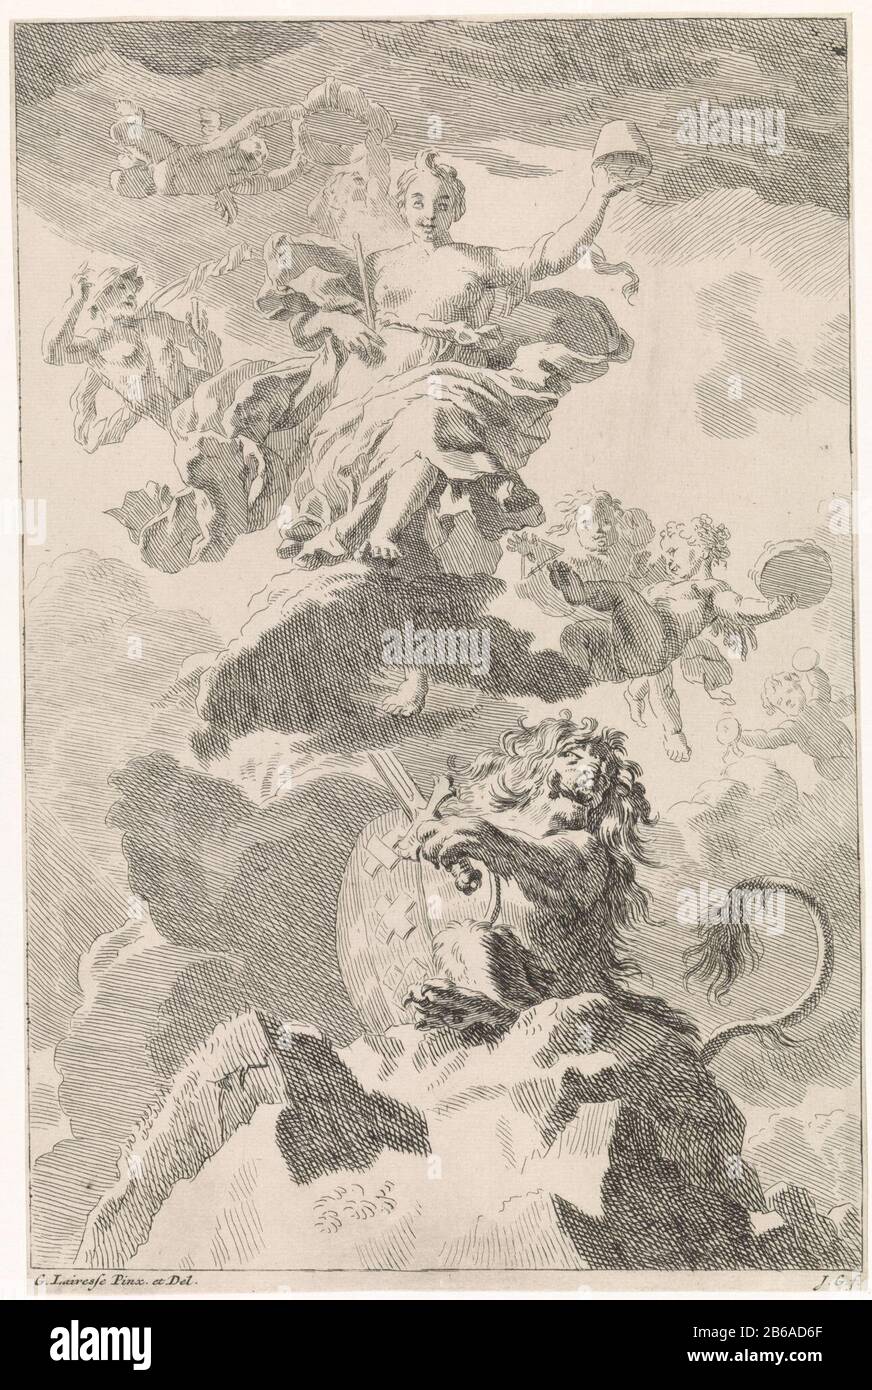 Allégorie sur le libre-échange le lion Bataafse biblique, mythologique et allégorique (titre de série) dans les nuages la personnification de la liberté, avec un sceptre et un chapeau de liberté en main. Elle est entourée de putti et Mercure. Sous son Lion Batavian, lourd d dans la main et les bras d'Amsterdam sur le côté. L'imprimé est à un plafond de peinture de Gérard de Lairesse et fait partie d'une série avec des voorstellingen bibliques, mythologiques et allégoriques. Fabricant : Print Maker: Johannes Glauber (indiqué sur l'objet) à un dessin de: Gerard de Lairesse (indiqué sur l'objet) à la peinture de Gerard Banque D'Images